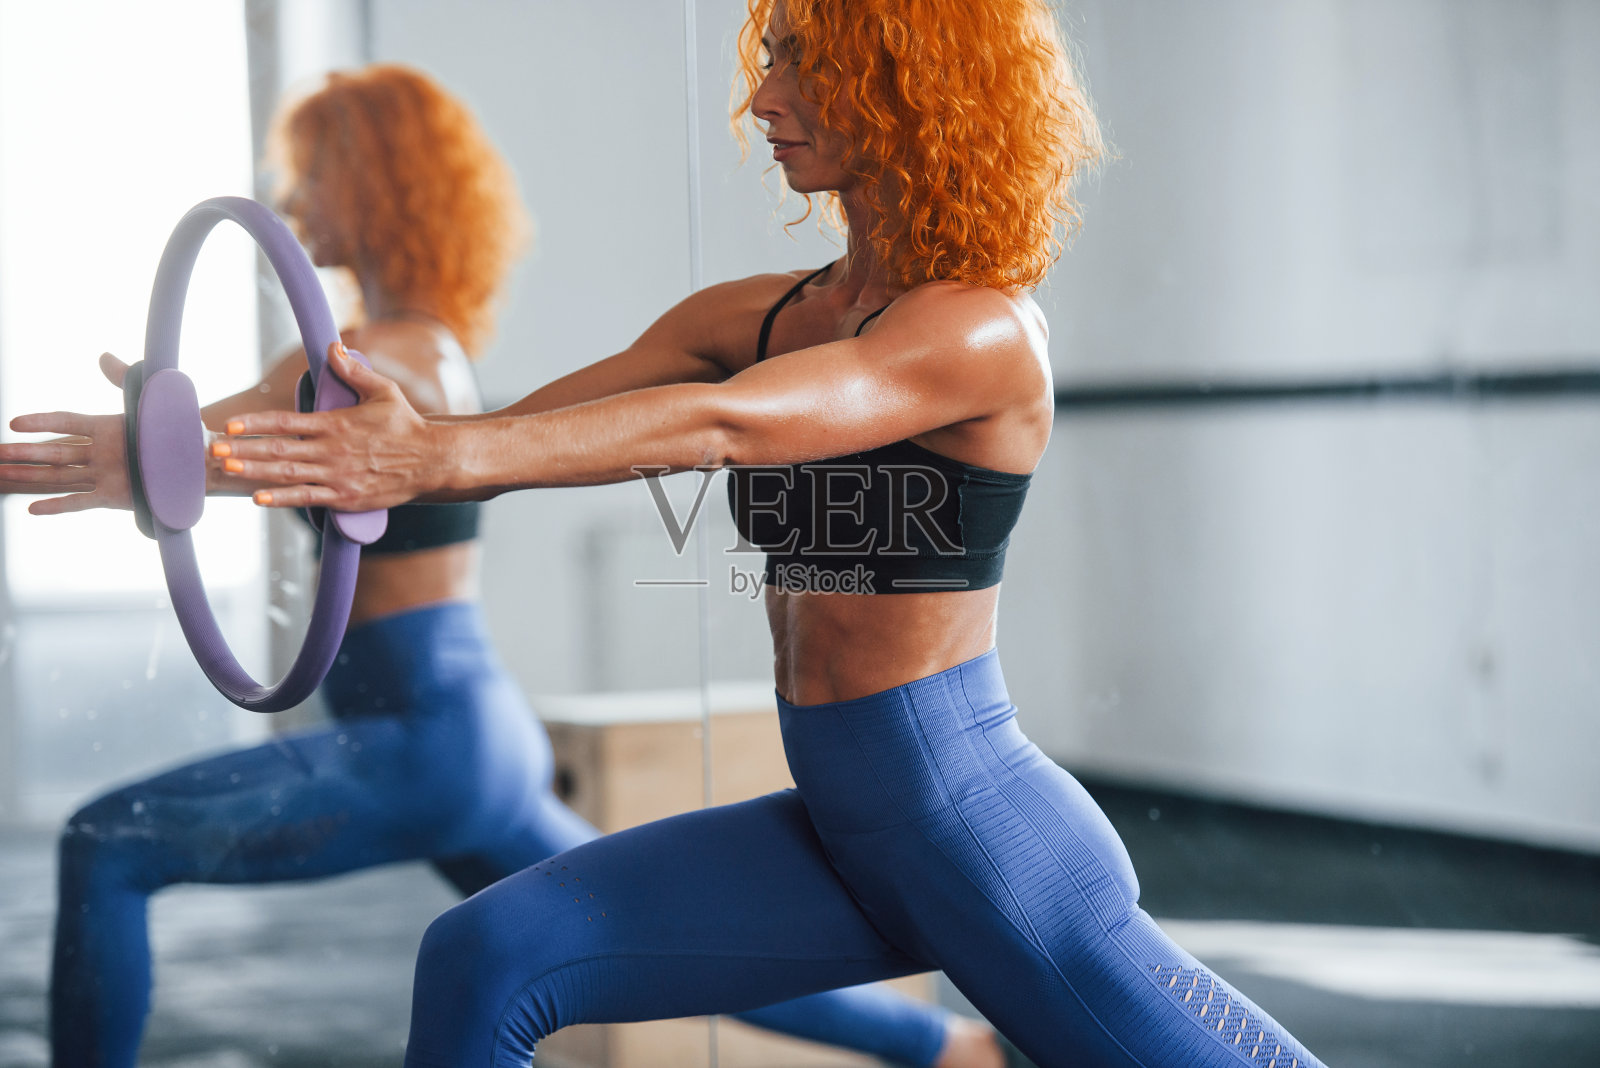 有特殊设备。喜欢运动的红发女孩白天去健身房健身。肌肉发达的身体类型照片摄影图片